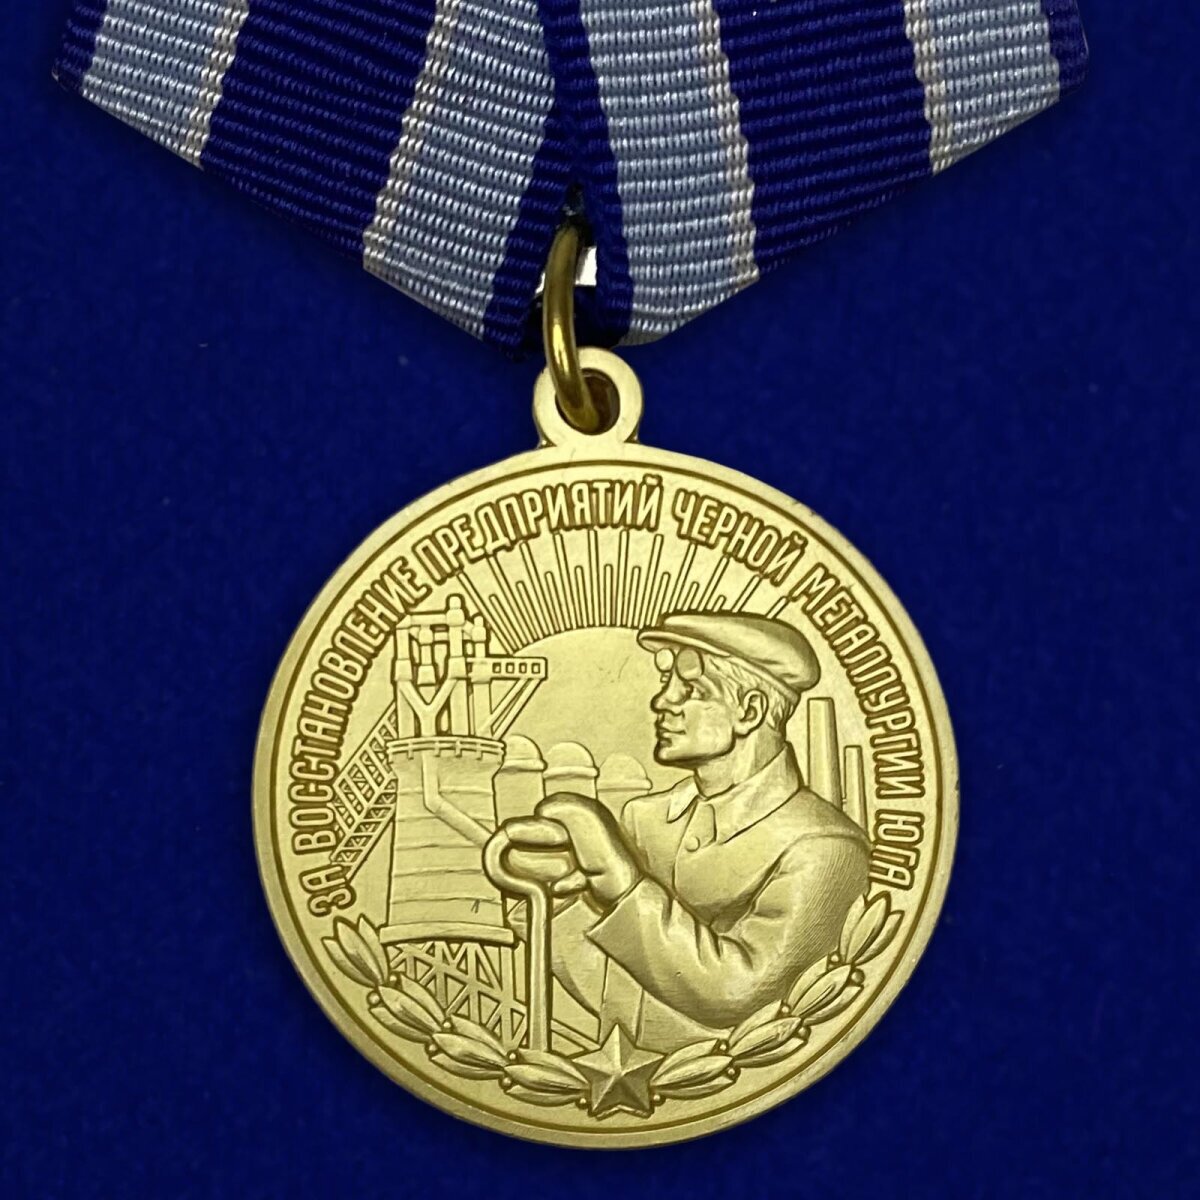 Медаль "За восстановление предприятий черной металлургии Юга" (Муляж)